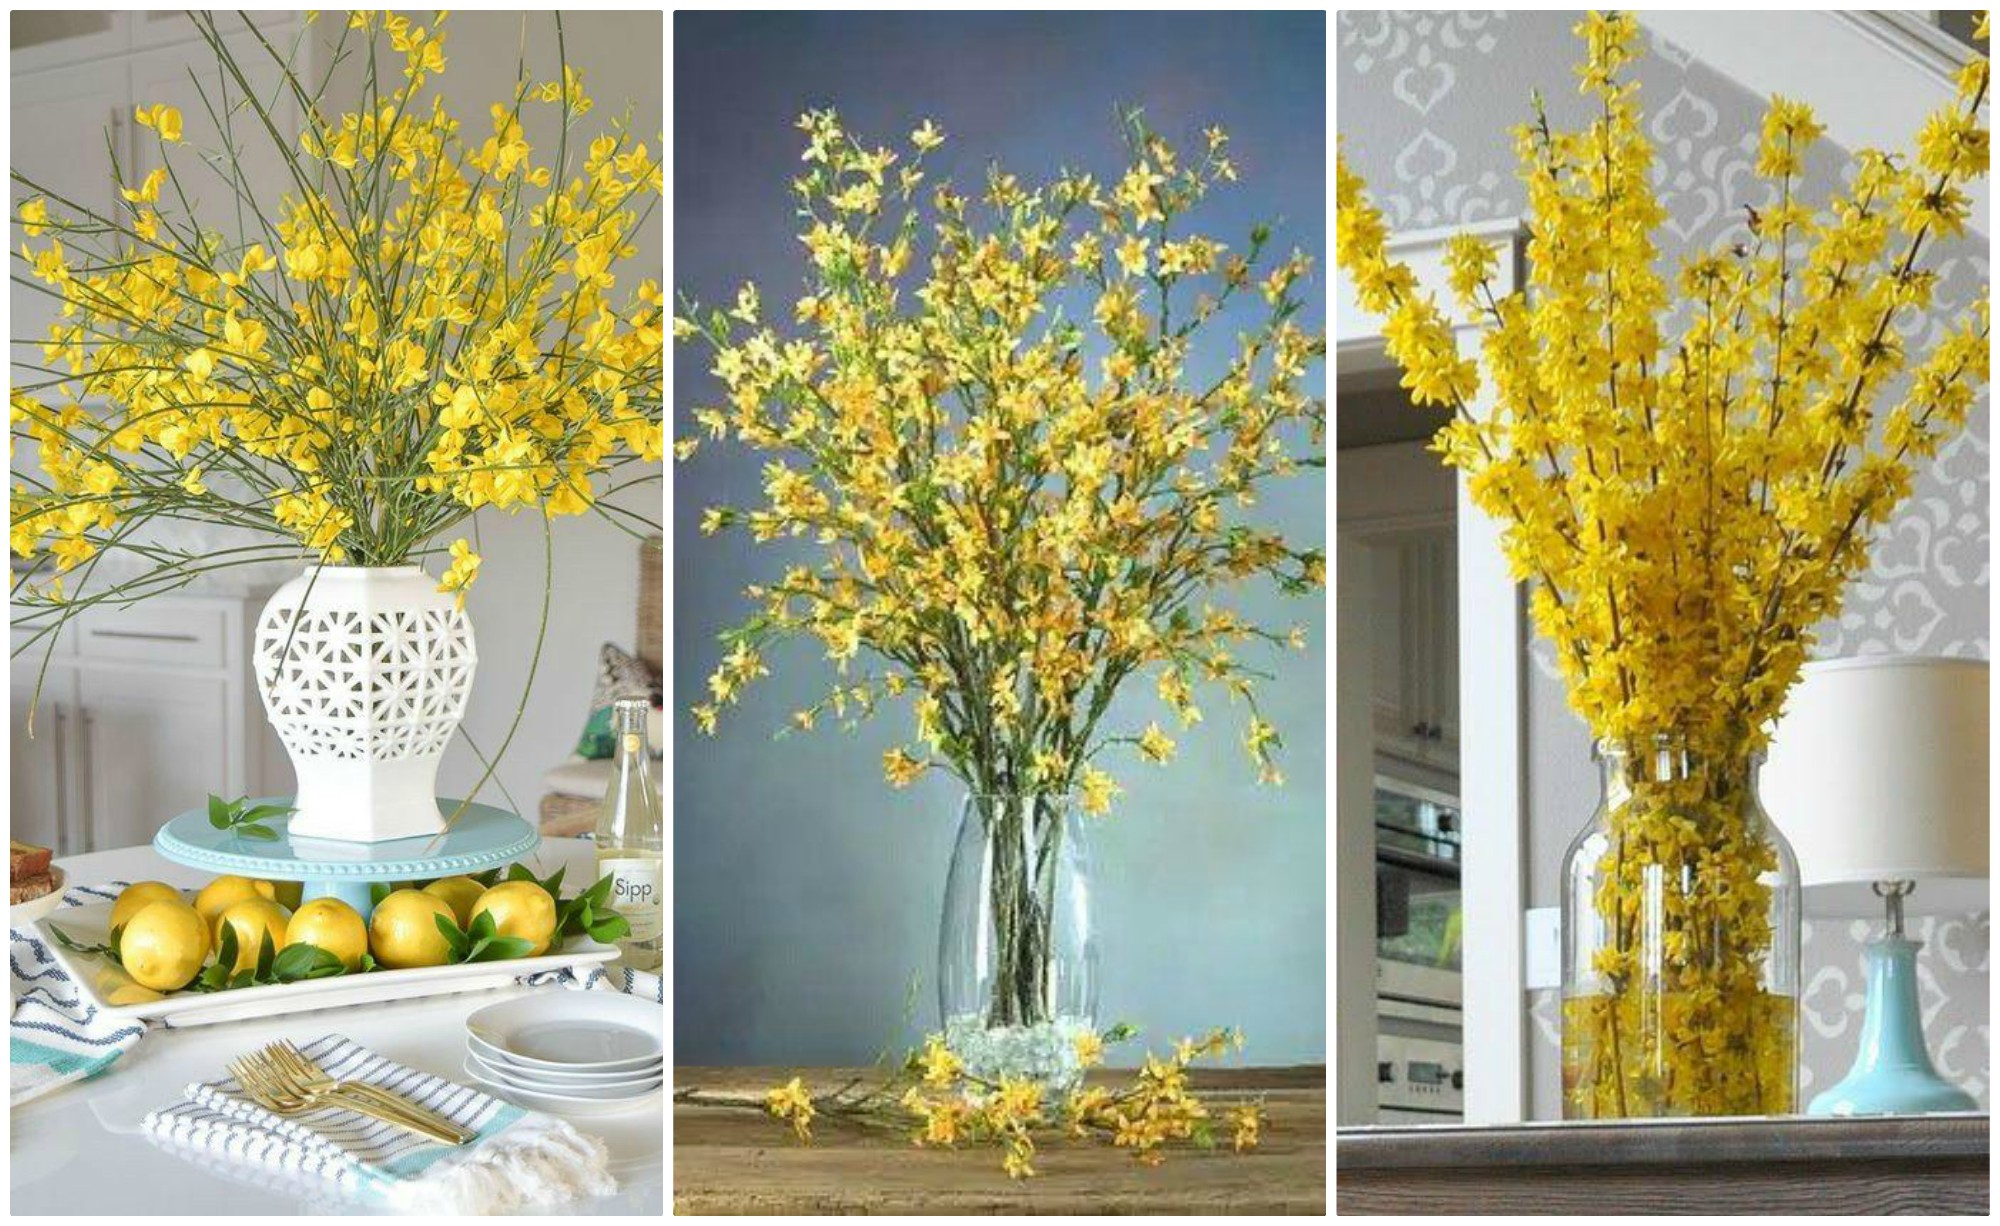 Cum să-ți decorezi casa de Florii? 10 idei de aranjamente florale superbe!